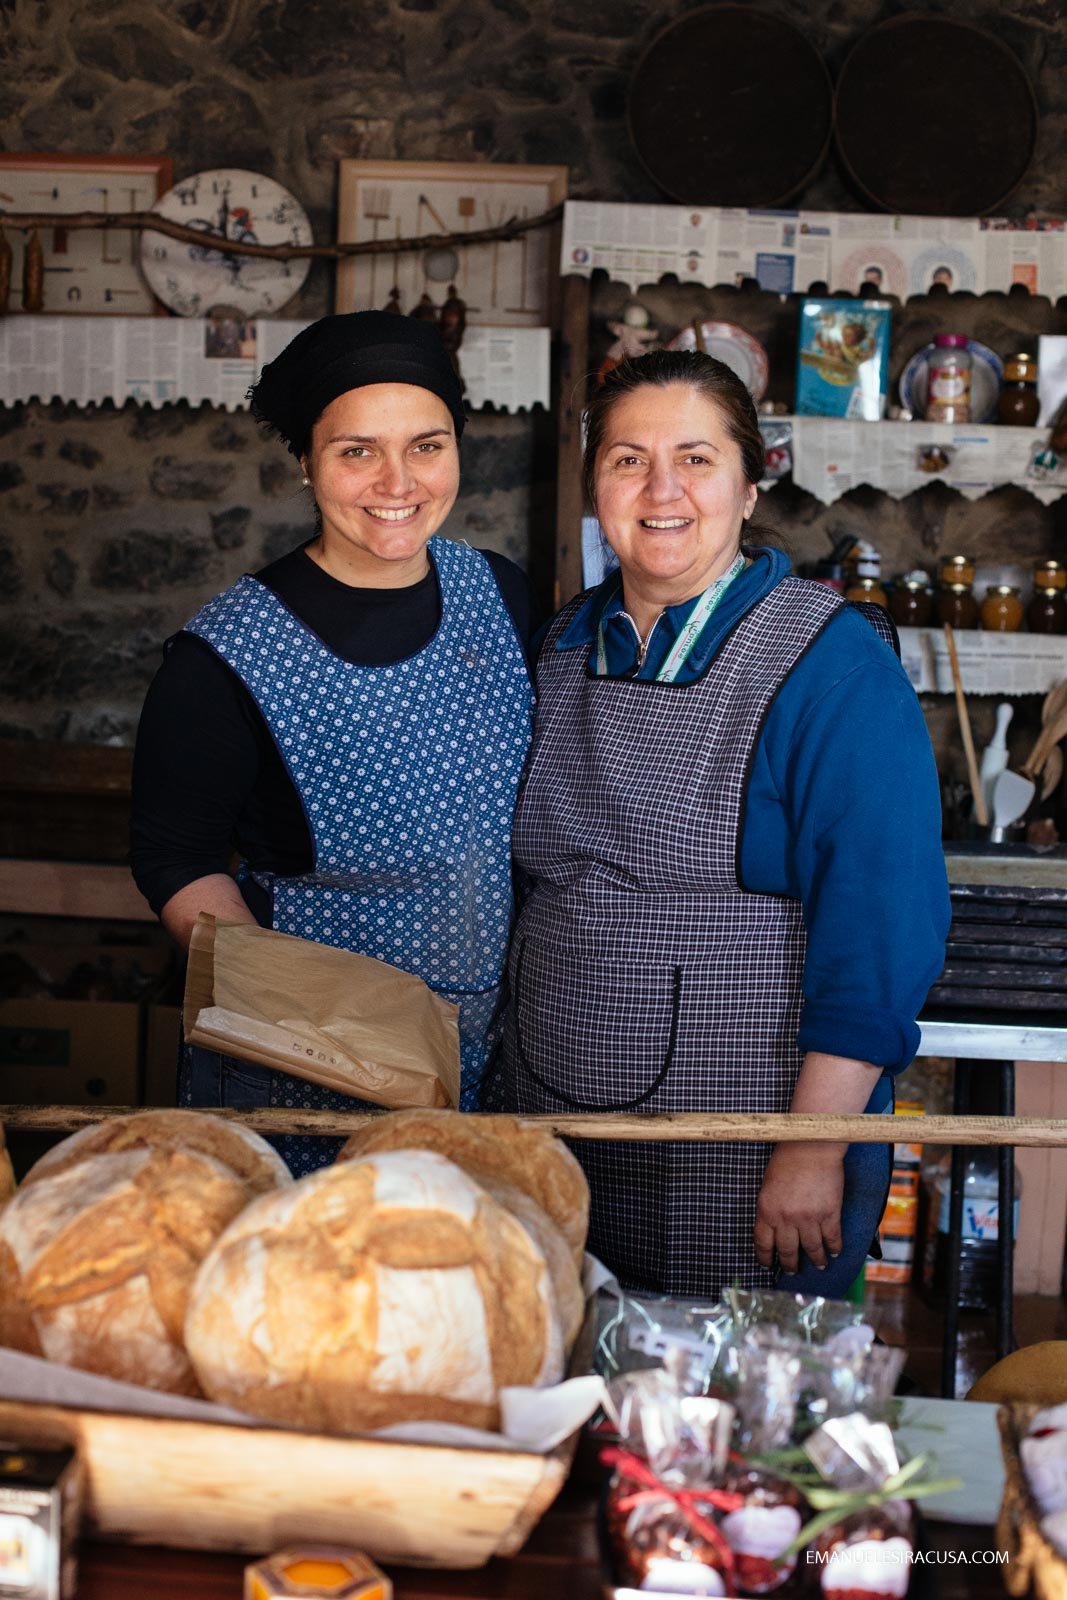 Tesouros de Penha Garcia, a local bakery making traditional baking products, Penha Garcia, 2016